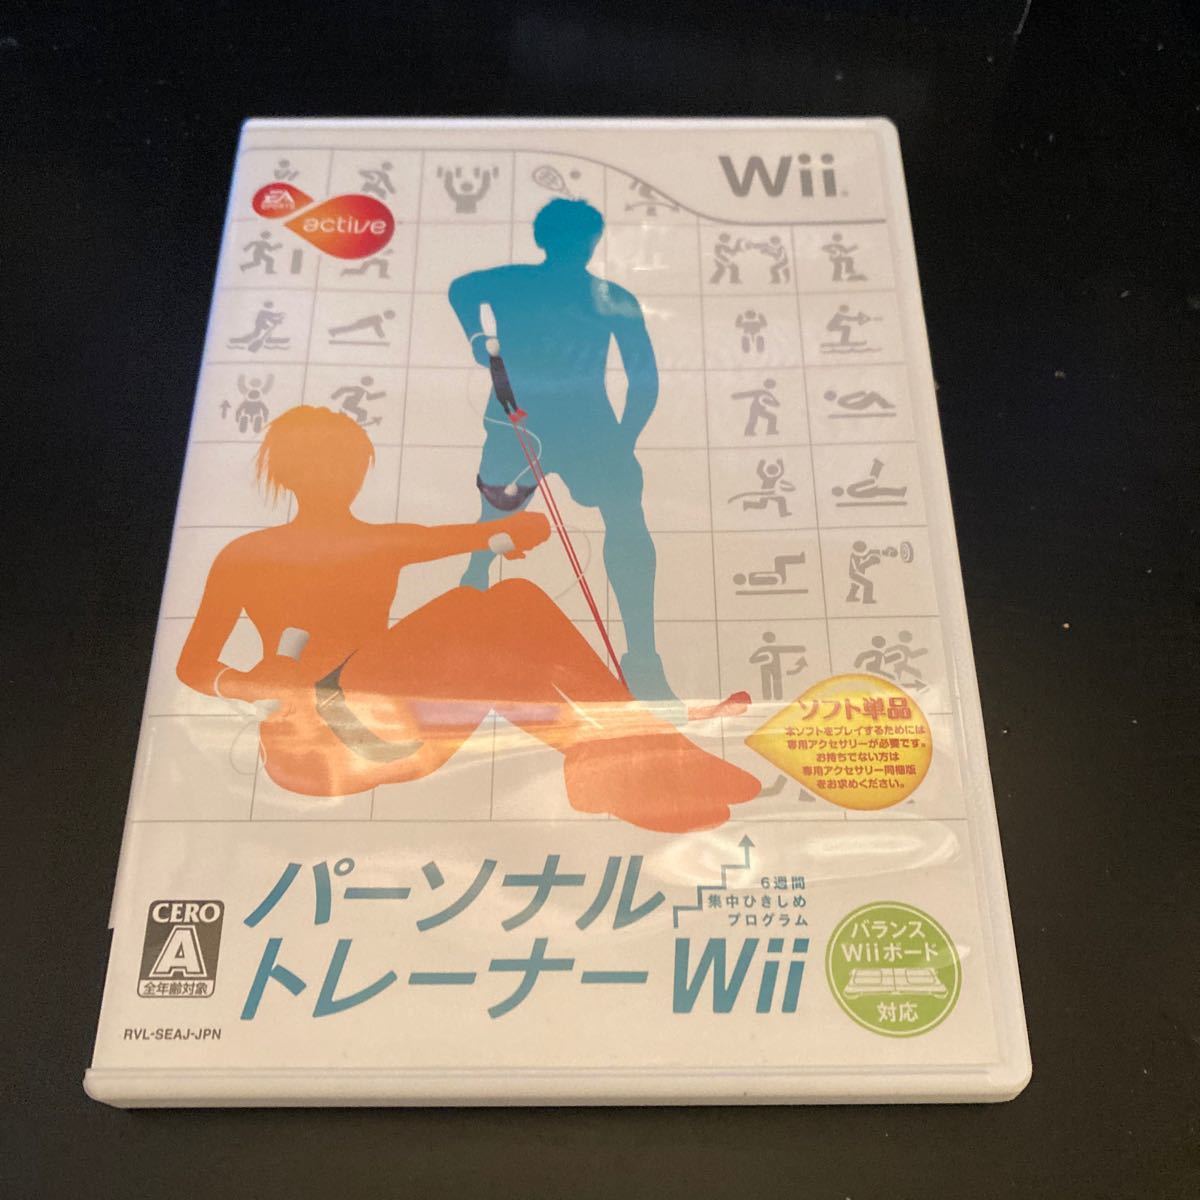 【Wii】 EA SPORTS アクティブ パーソナル トレーナーWii 6週間集中ひきしめプログラム （ソフト単品）